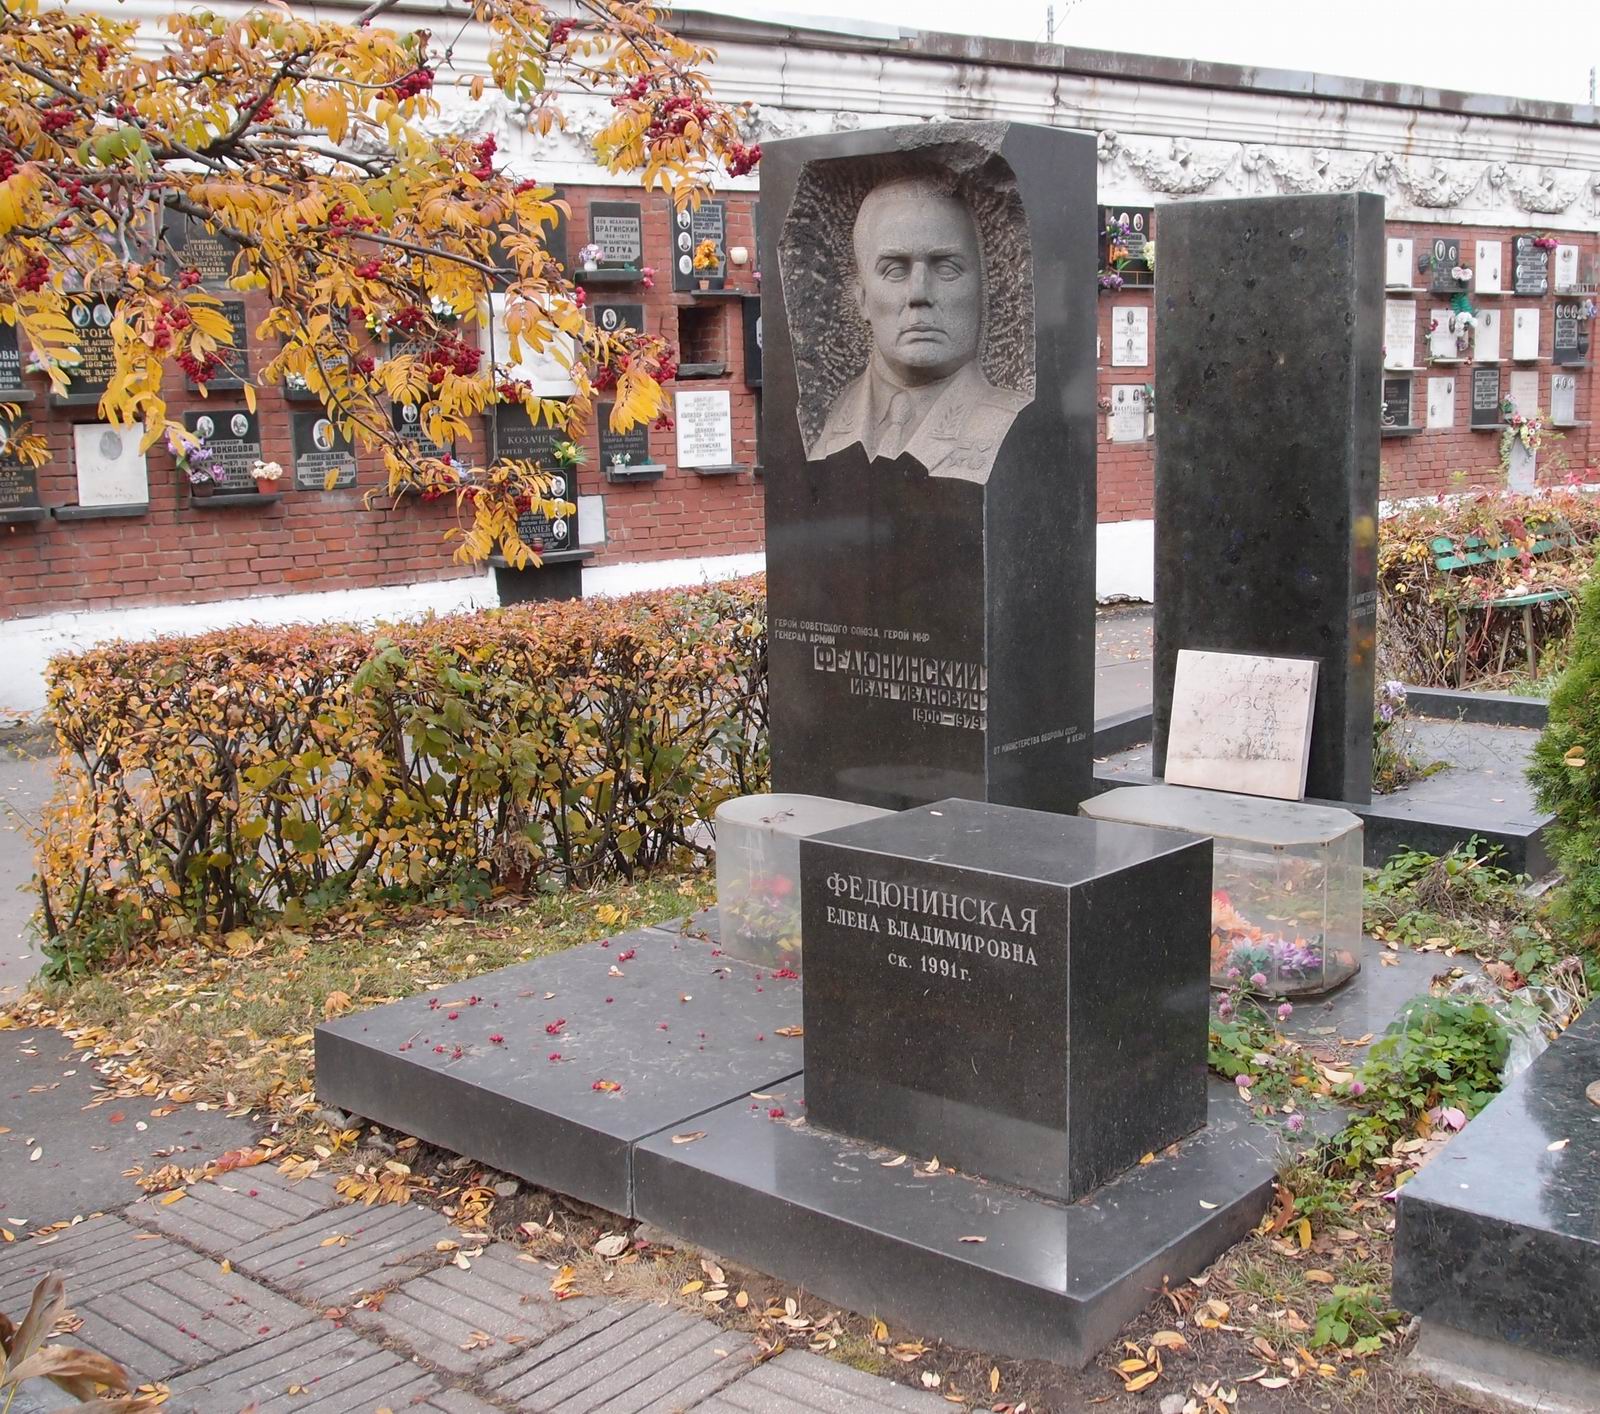 Памятник на могиле Федюнинского И.И. (1900-1977), на Новодевичьем кладбище (7-13-17). Нажмите левую кнопку мыши чтобы увидеть фрагмент памятника.